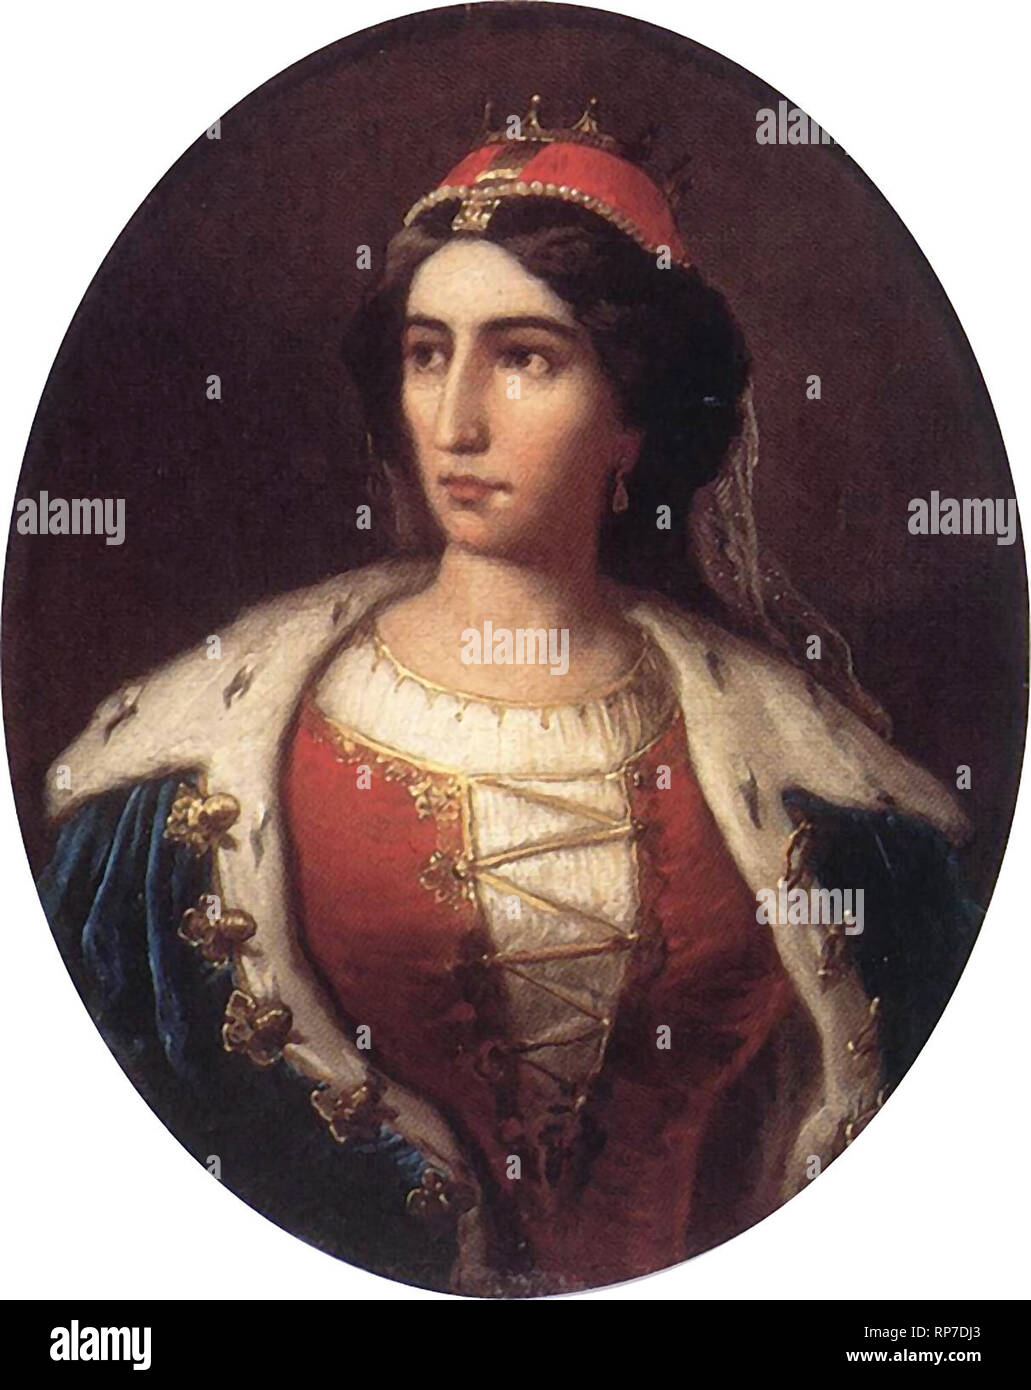 Comtesse Ilona ZrInyi (1643-1703), Hongrois femme noble, héroïne de l'insurrection anti-Habsbourg. Jakobey Karoly, vers 1880 Banque D'Images